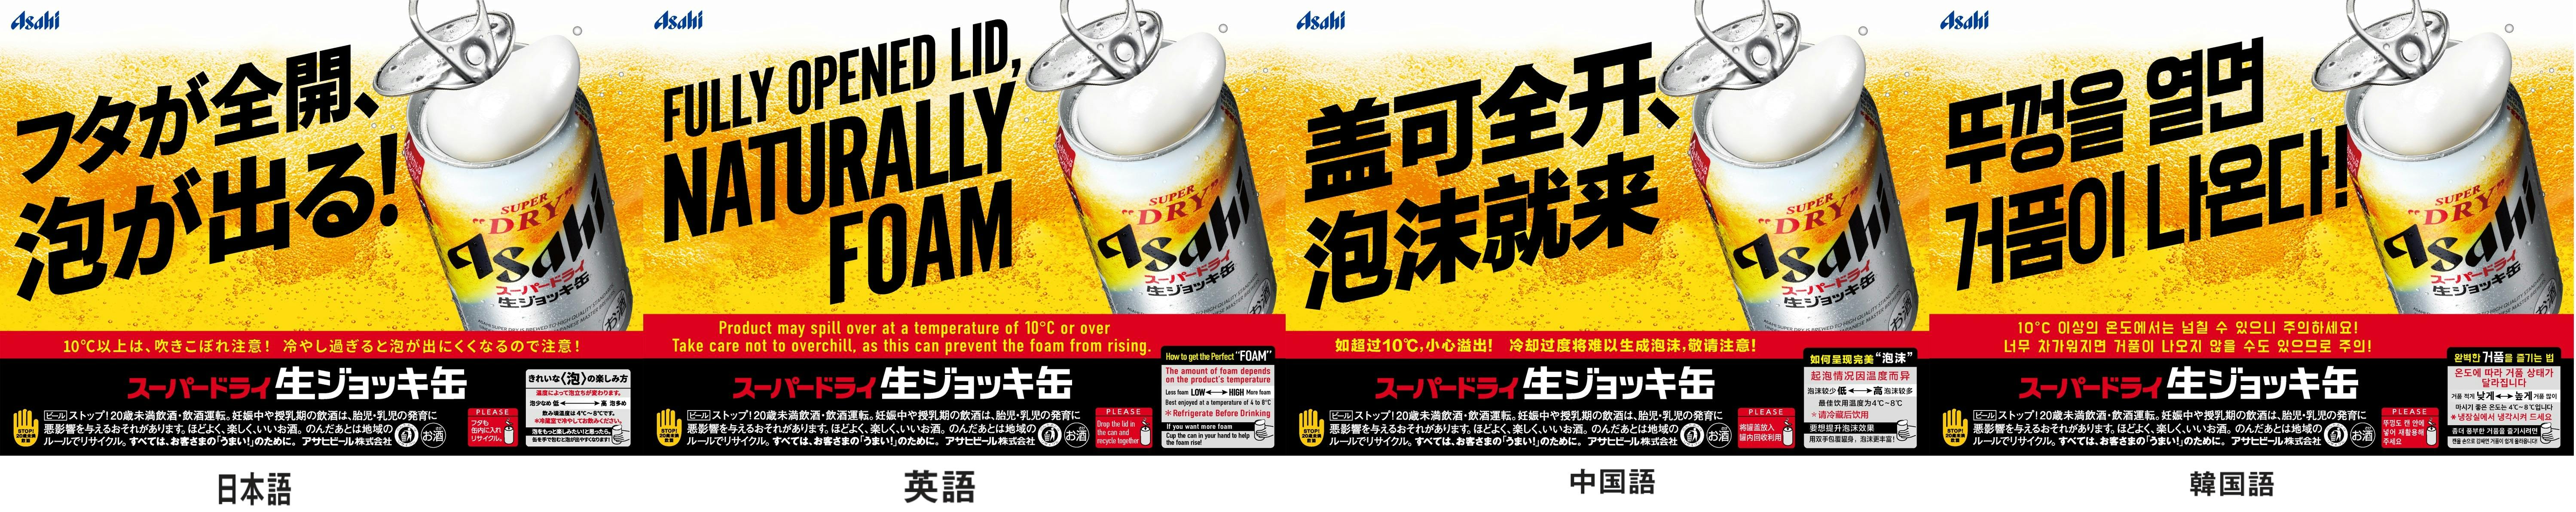 日本語のほか、英語、中国語、韓国語で表記された「生ジョッキ缶」のPOP